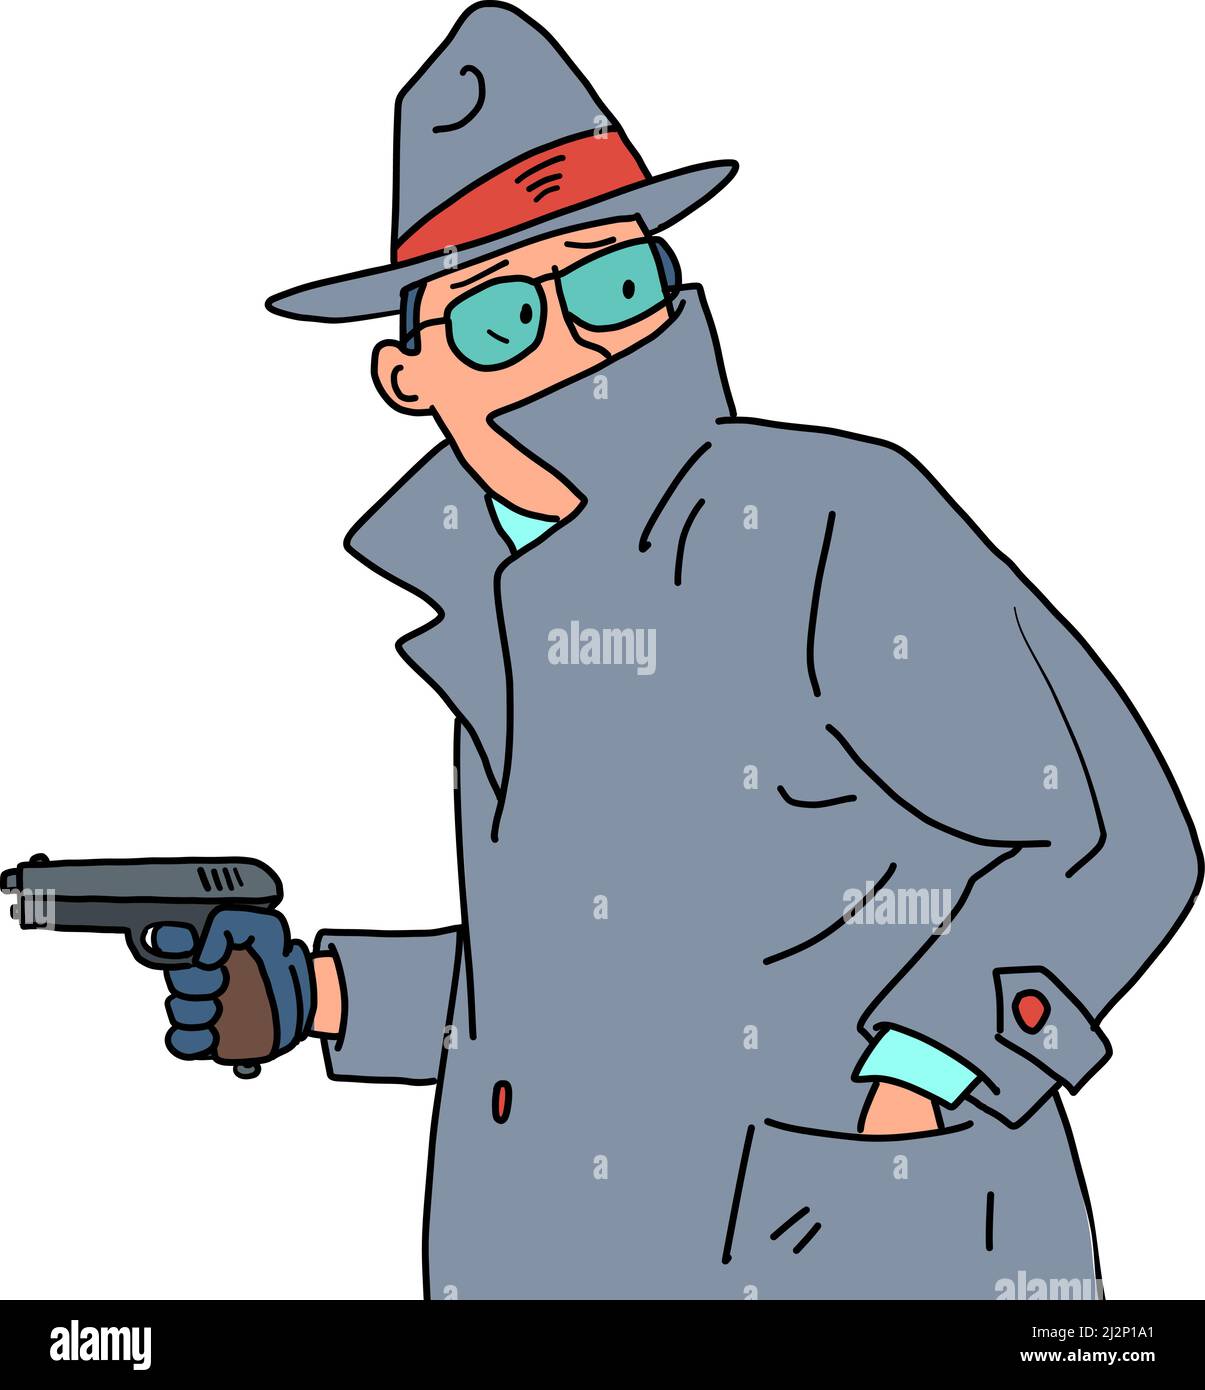 Détective avec une arme dans ses mains. Détective privé, homme sous un manteau, un chapeau et des lunettes Illustration de Vecteur